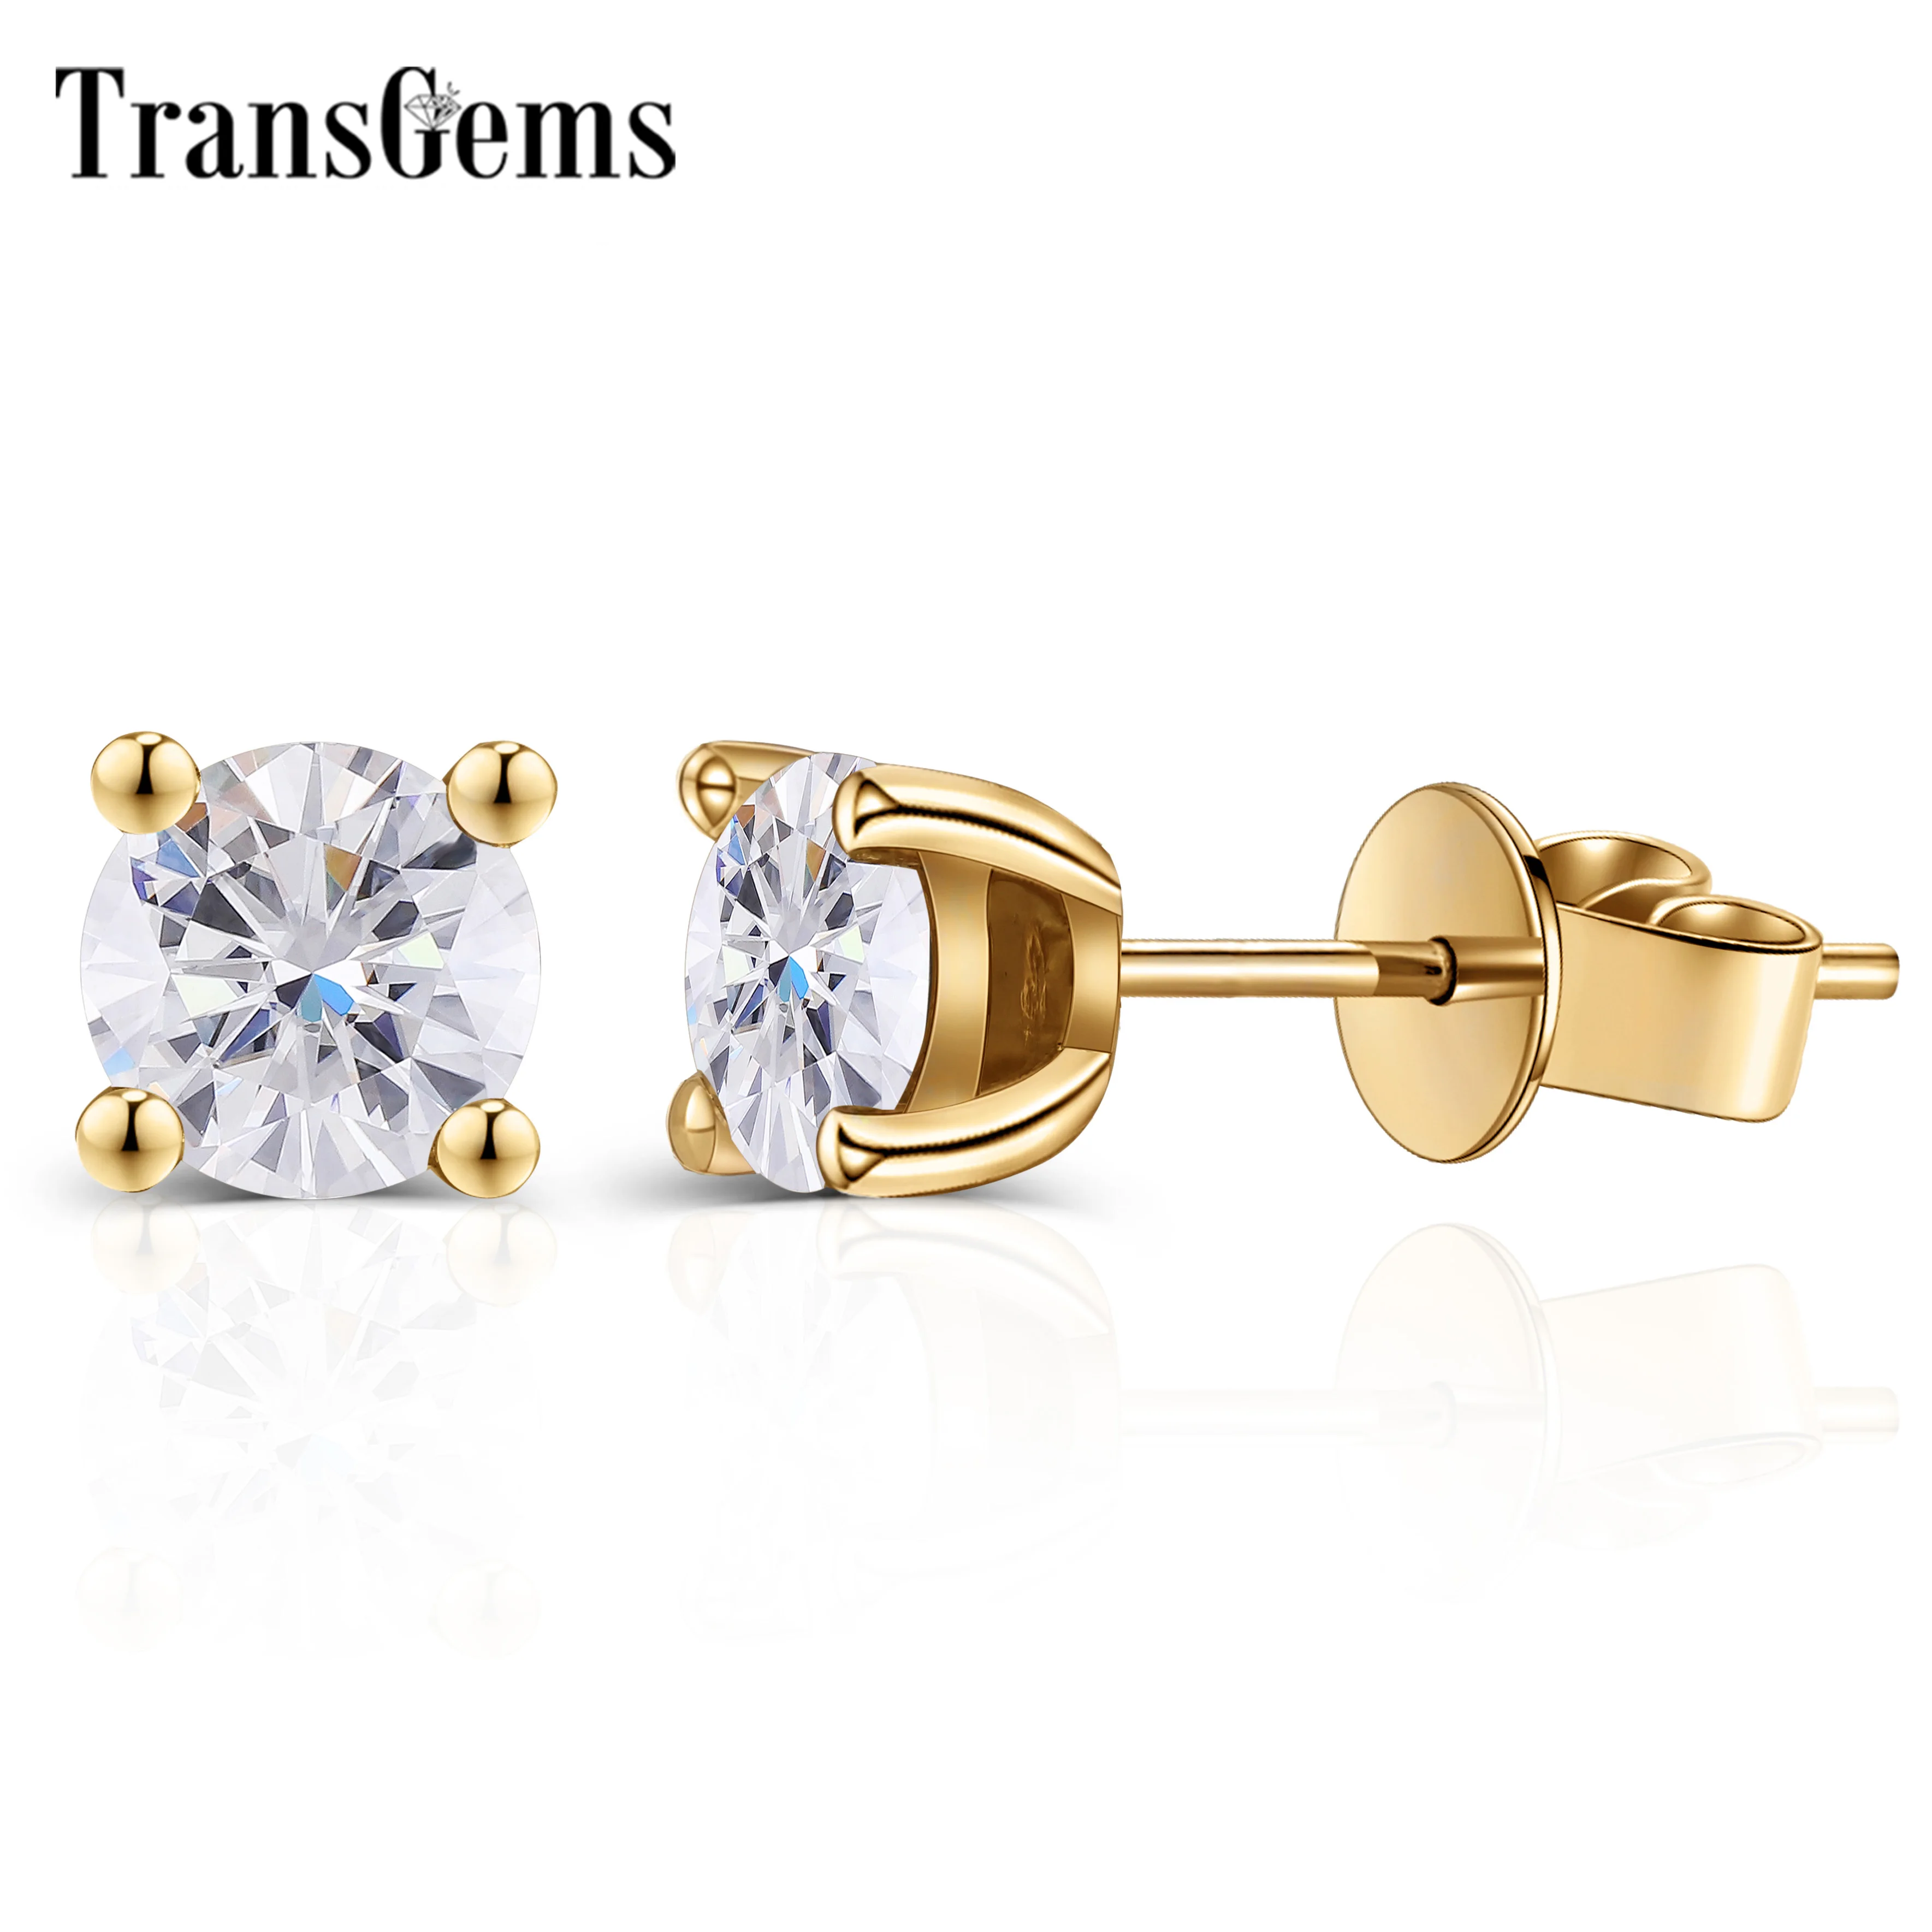 

TransGems 1 CTW Carat EF Colorless Moissanite Stud Earrings Women Fashion Jewelry 18K Whtie Gold Four Prongs Earrings